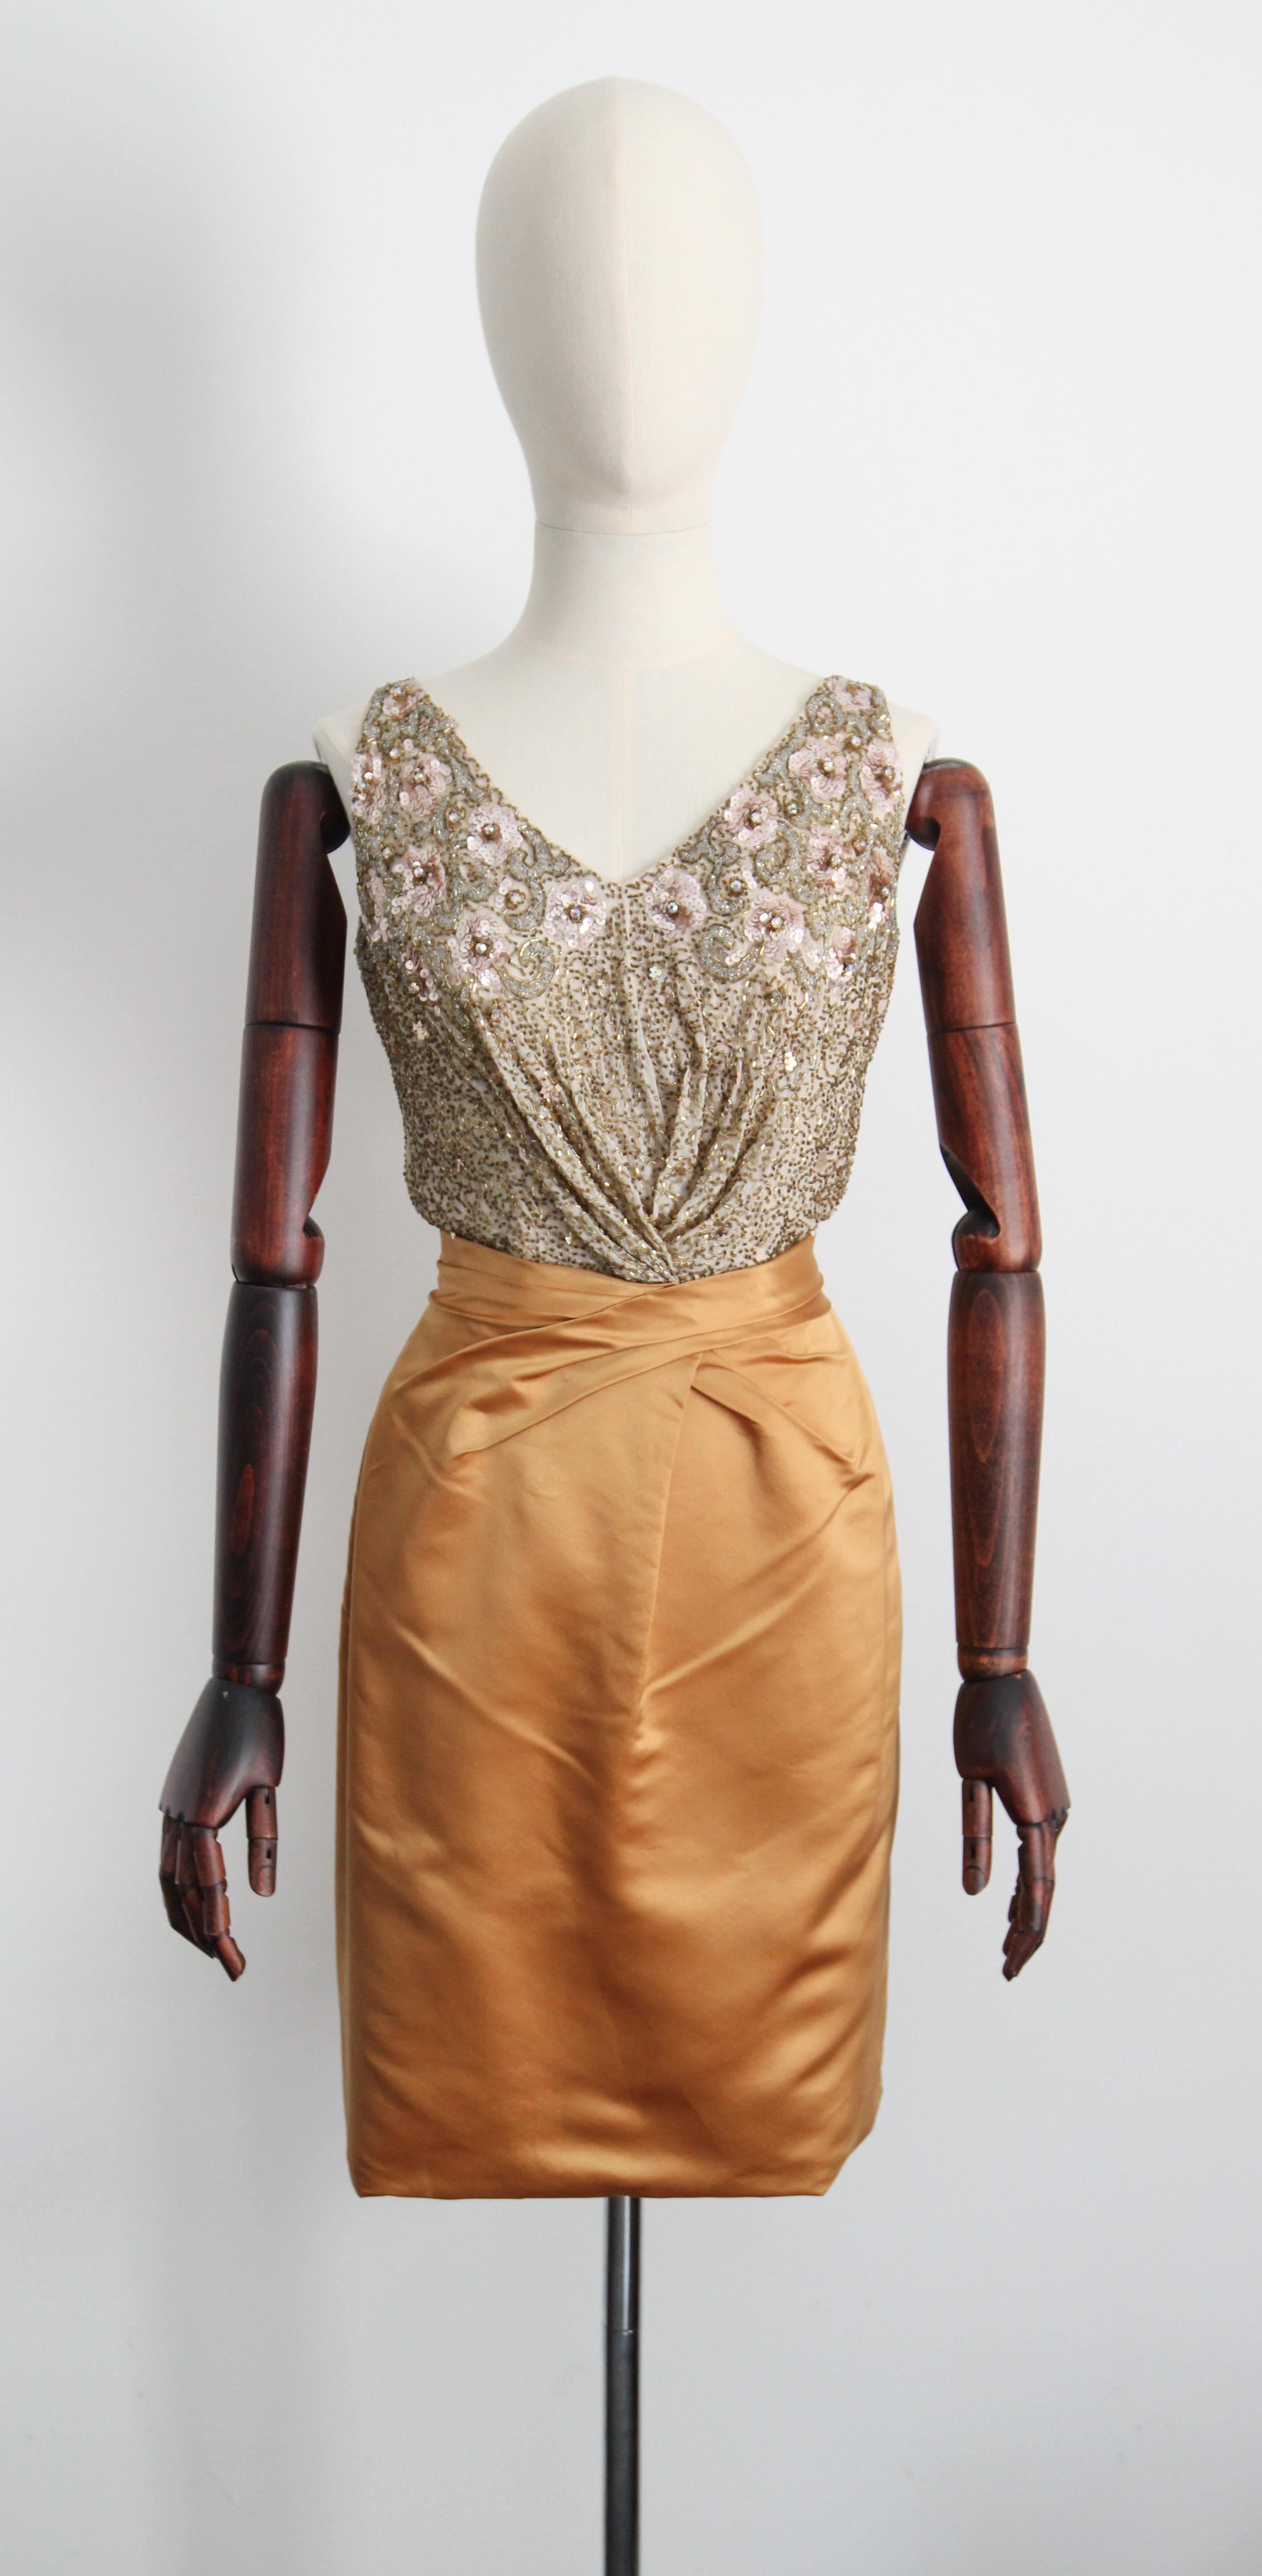 Réalisée dans une silhouette classique, cette somptueuse robe des années 1950 de Silhouette, en satin doré audacieux, est contrastée par un corsage en soie crème orné de perles de verre dorées, de fleurs de soie et de paillettes roses, avec des